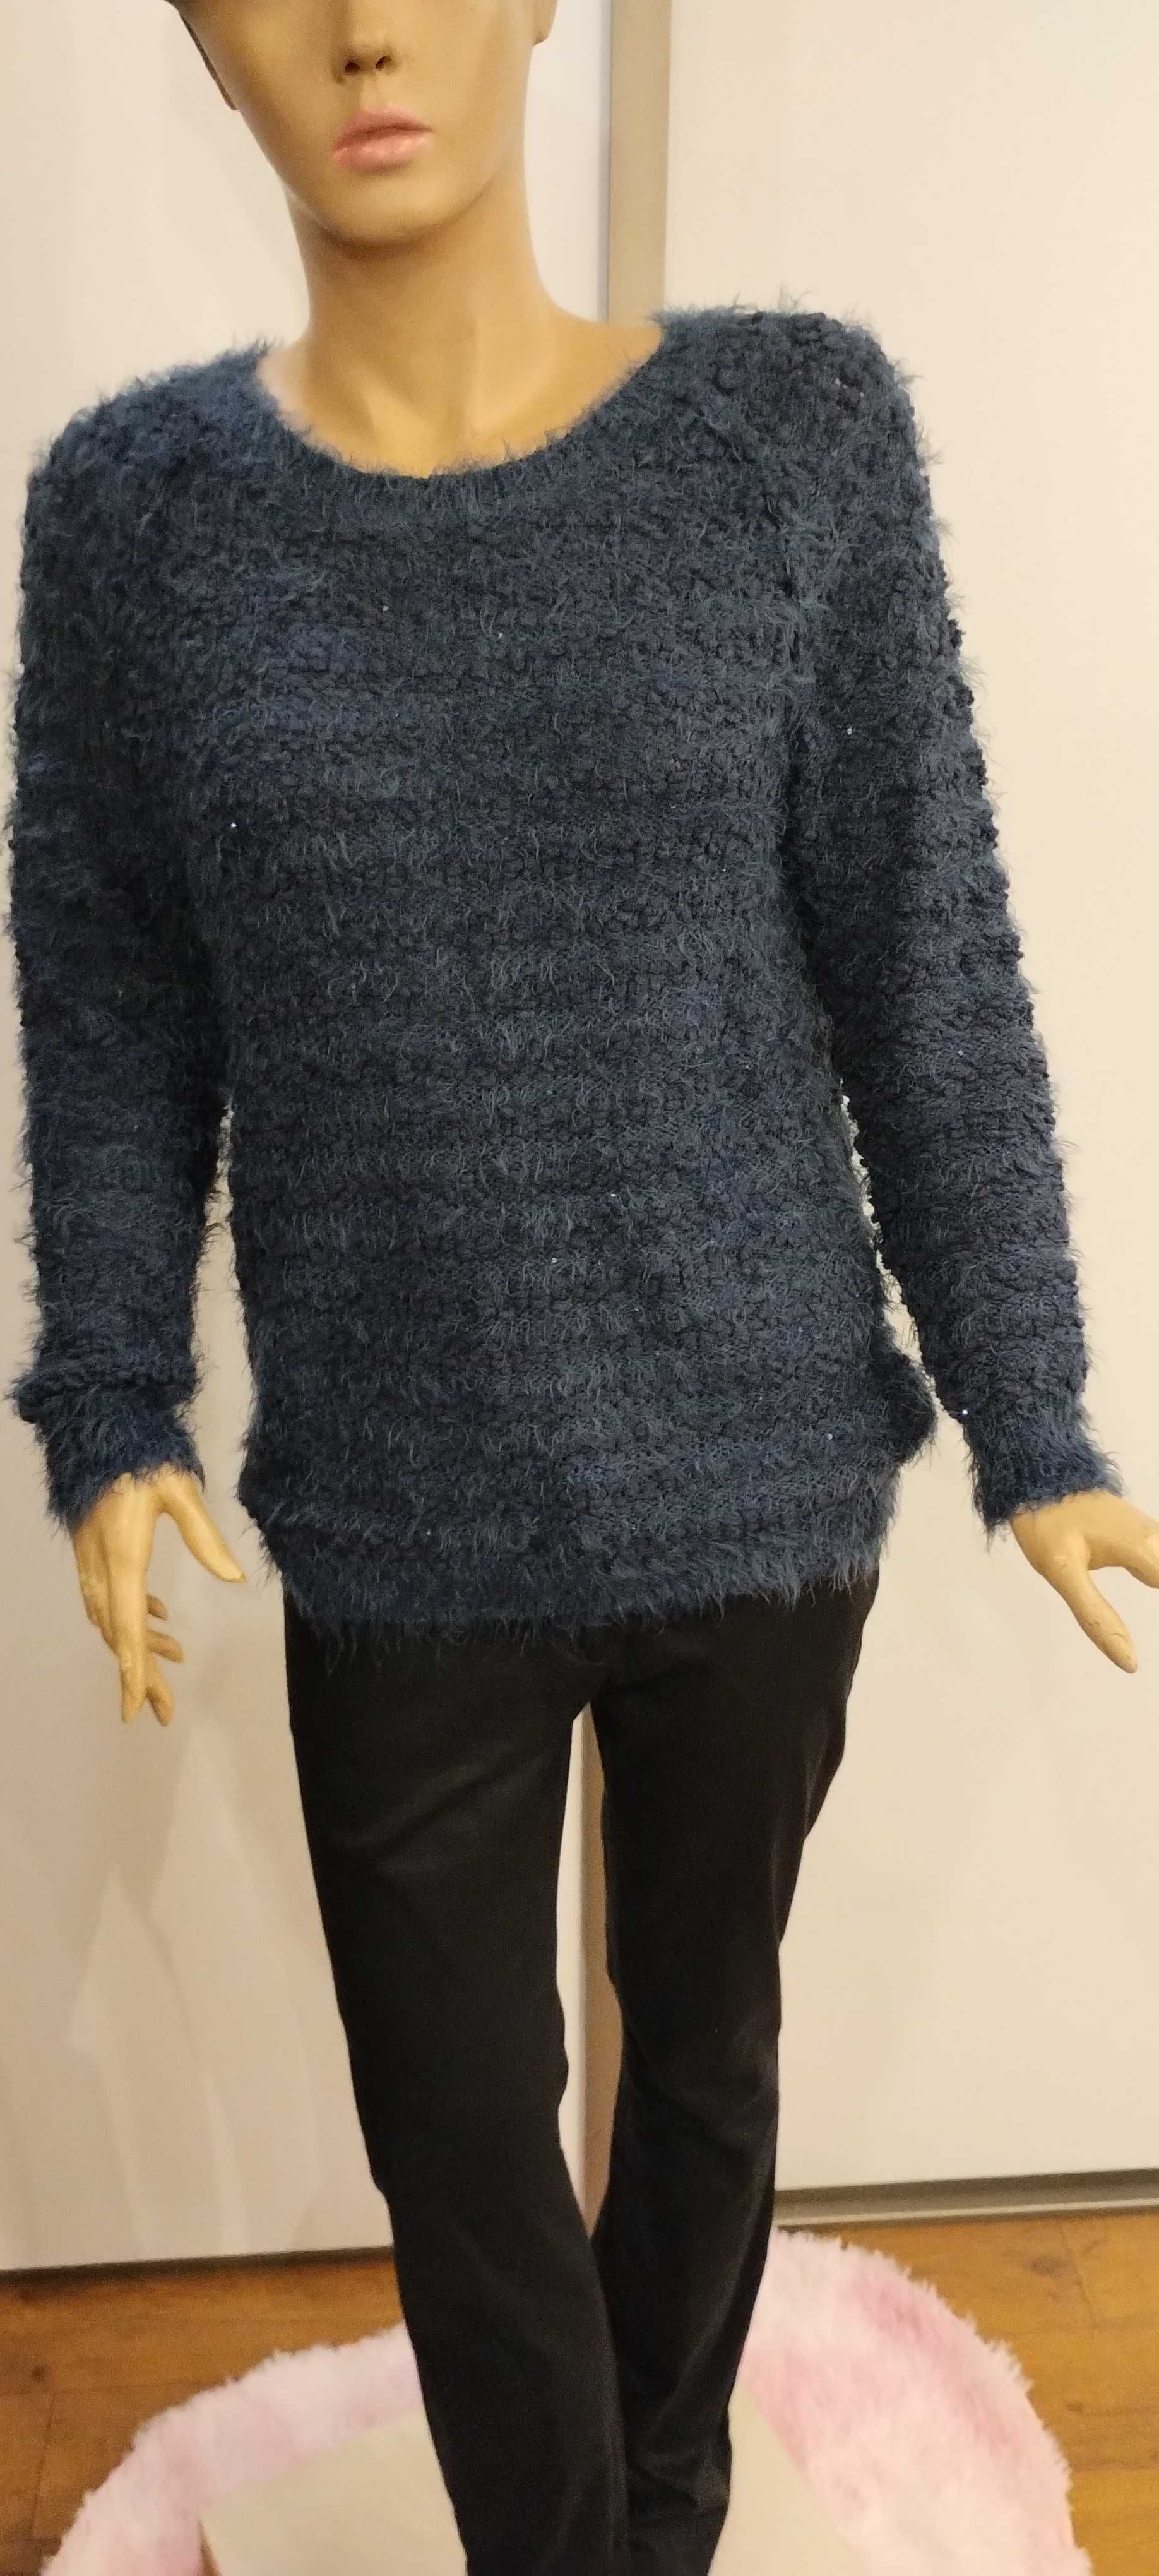 Sweterek z mieniącą się nitką S/M